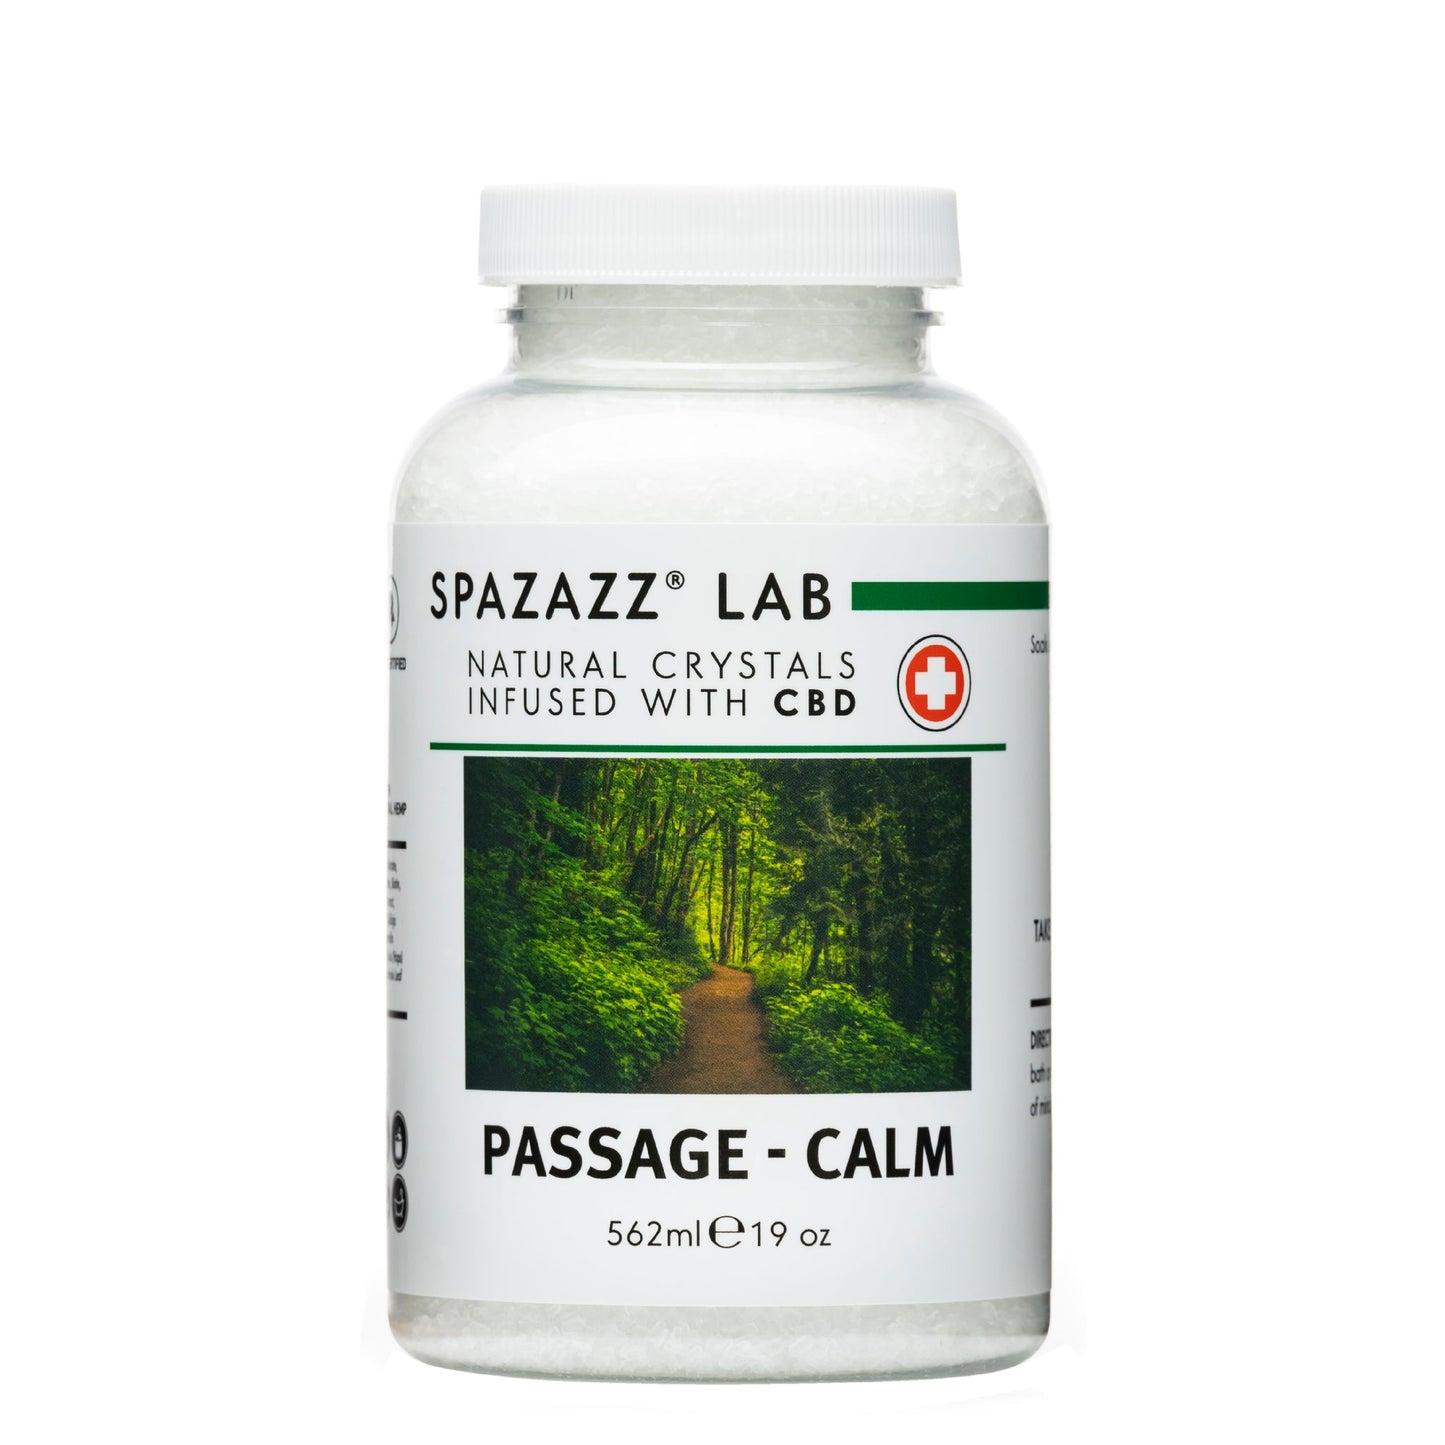 Spazazz Lab Passage - Calm